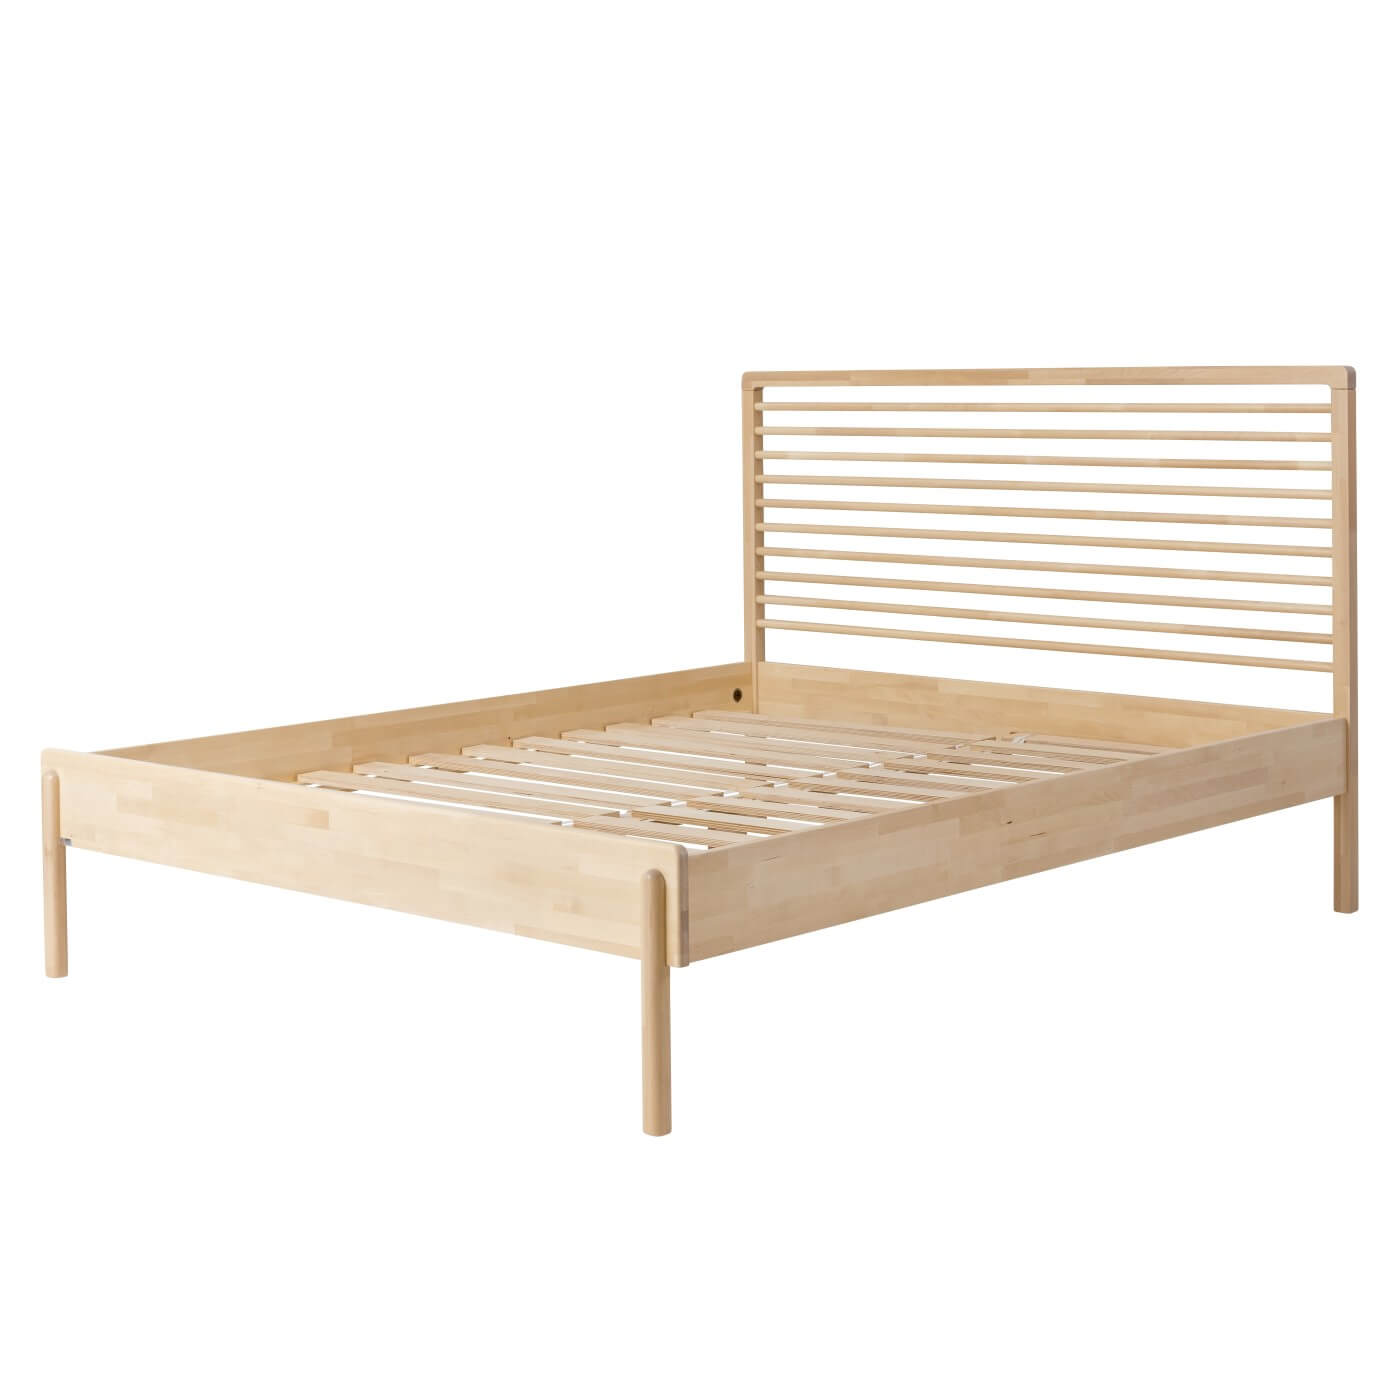 Łóżko design LENNU. Widoczne w całości drewniane łóżko 160x200 bez materaca. Łóżko dwuosobowe do sypialni na wysokich nóżkach z wysokim ażurowym drewnianym szczytem. Nowoczesny design